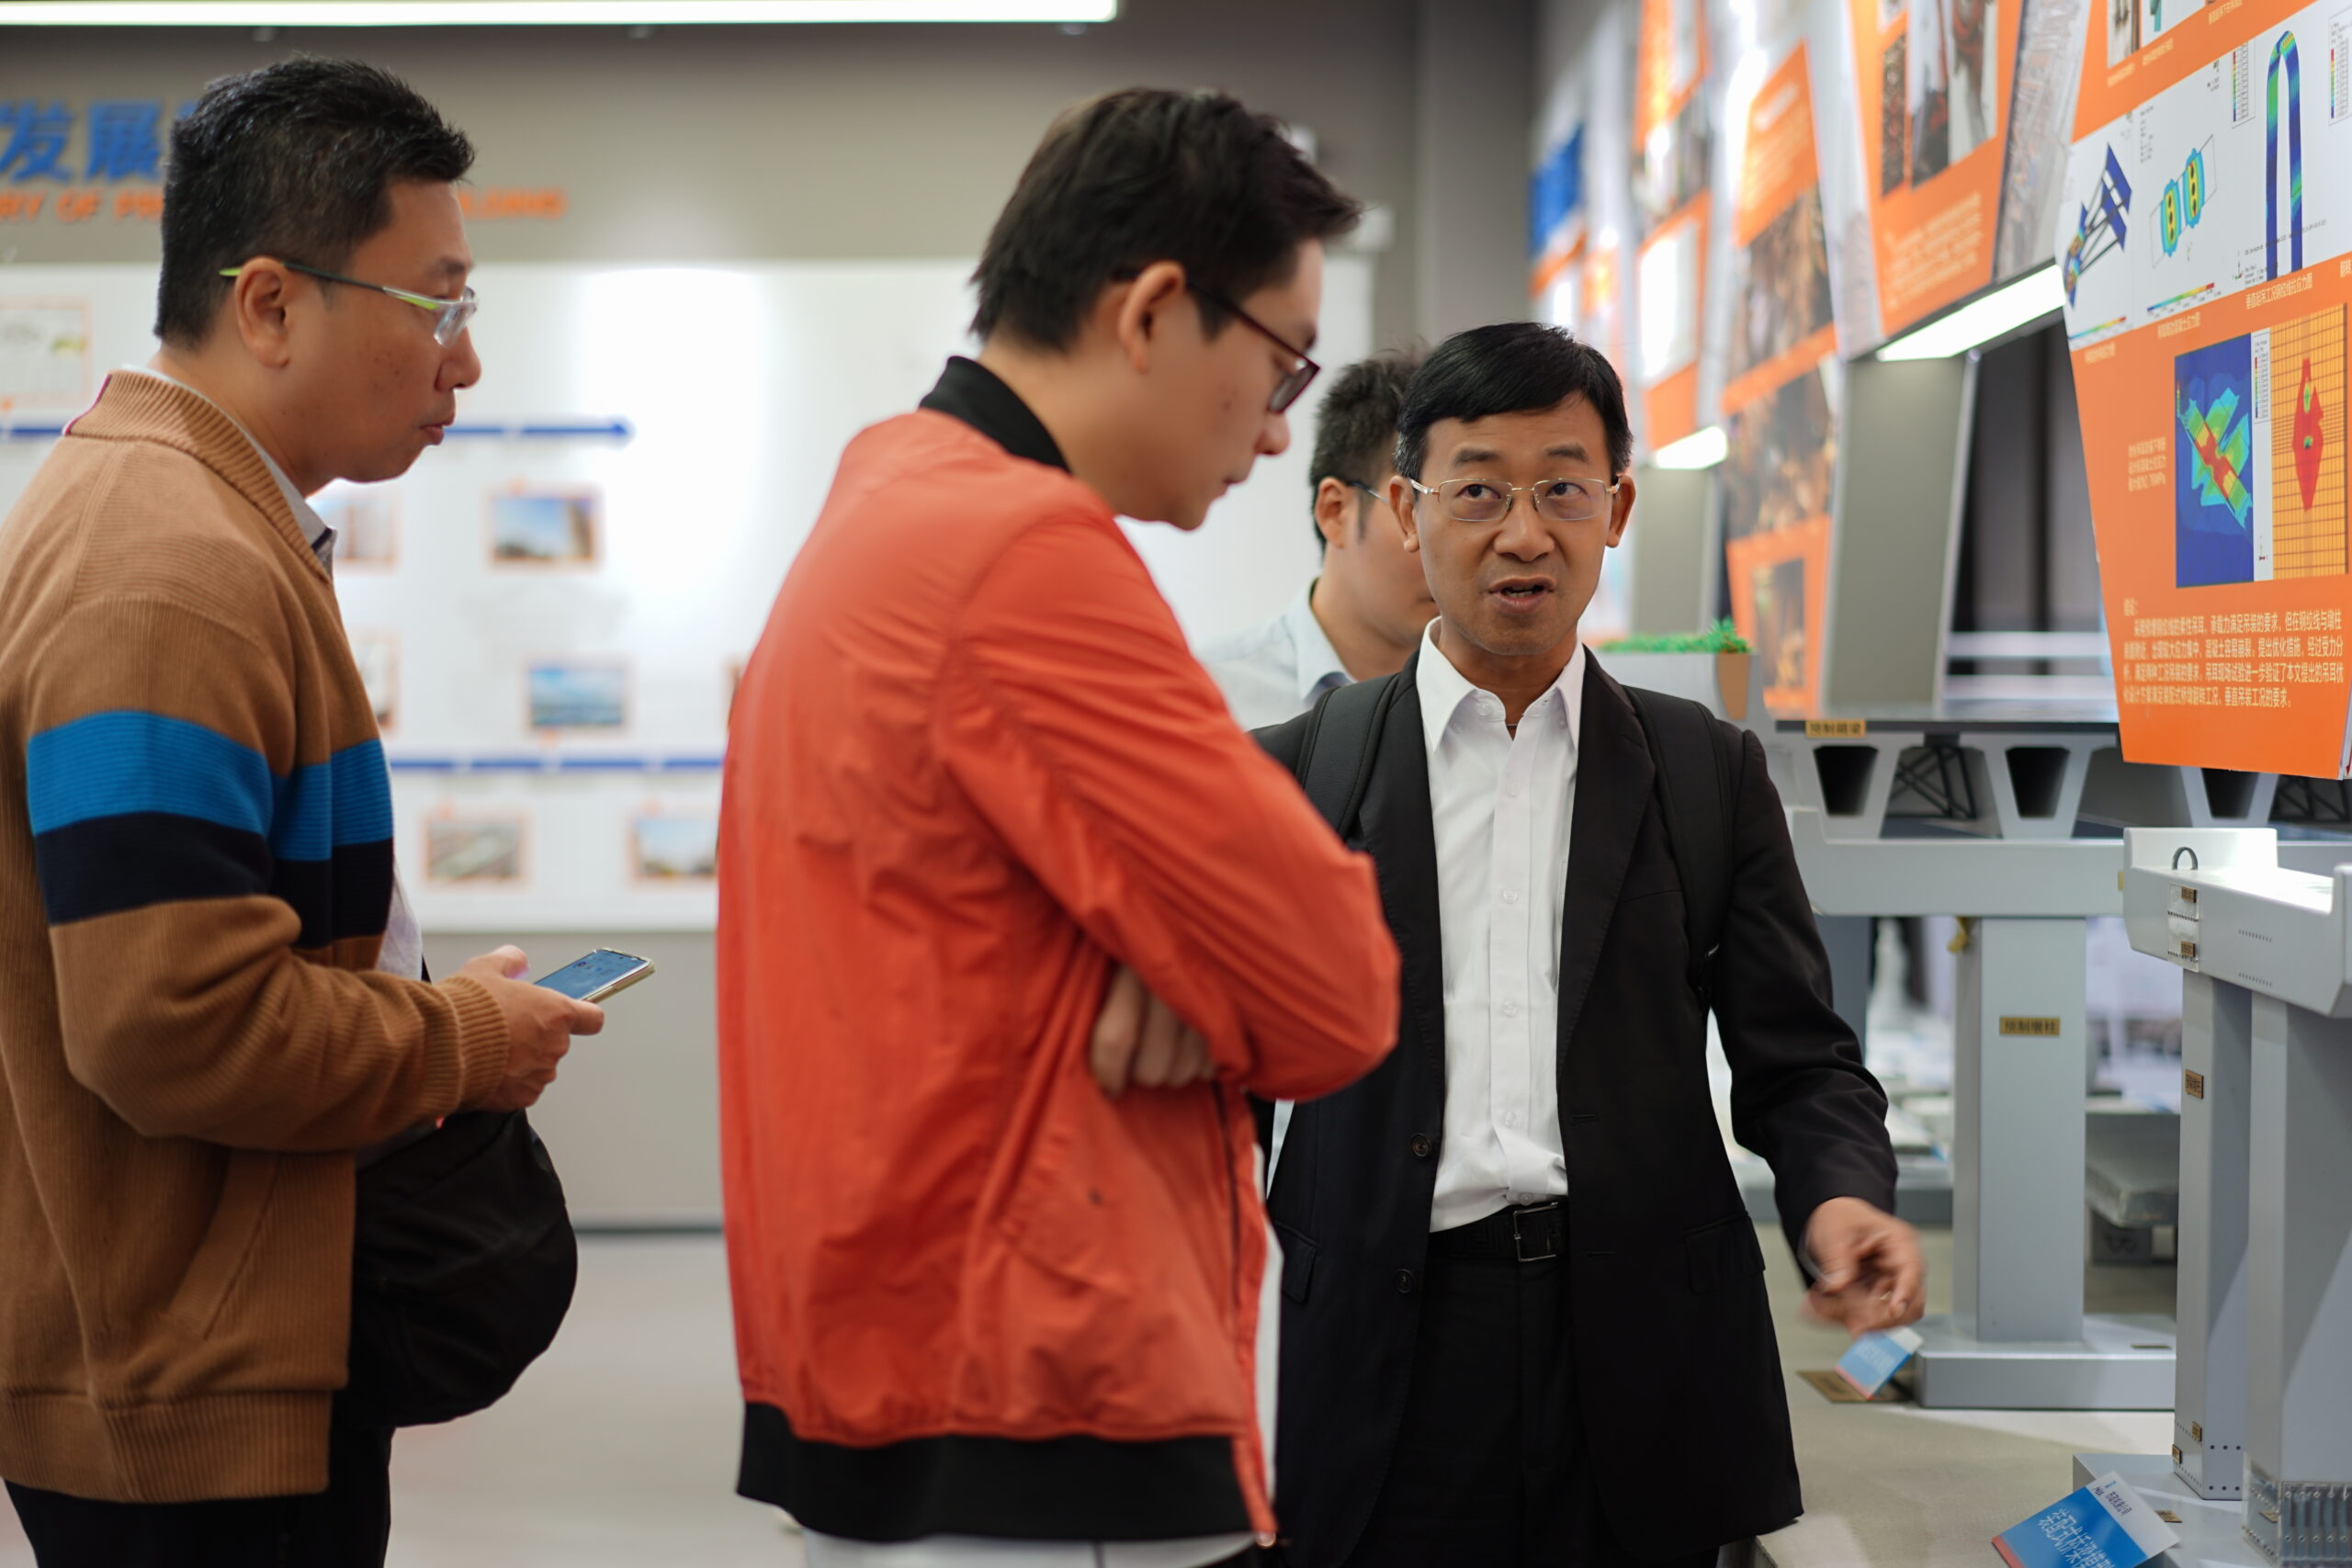 廣州市建築集團有限公司辦公室主任馬國鷹先生(右)向會員潘曉鉦先生介紹路橋的結構